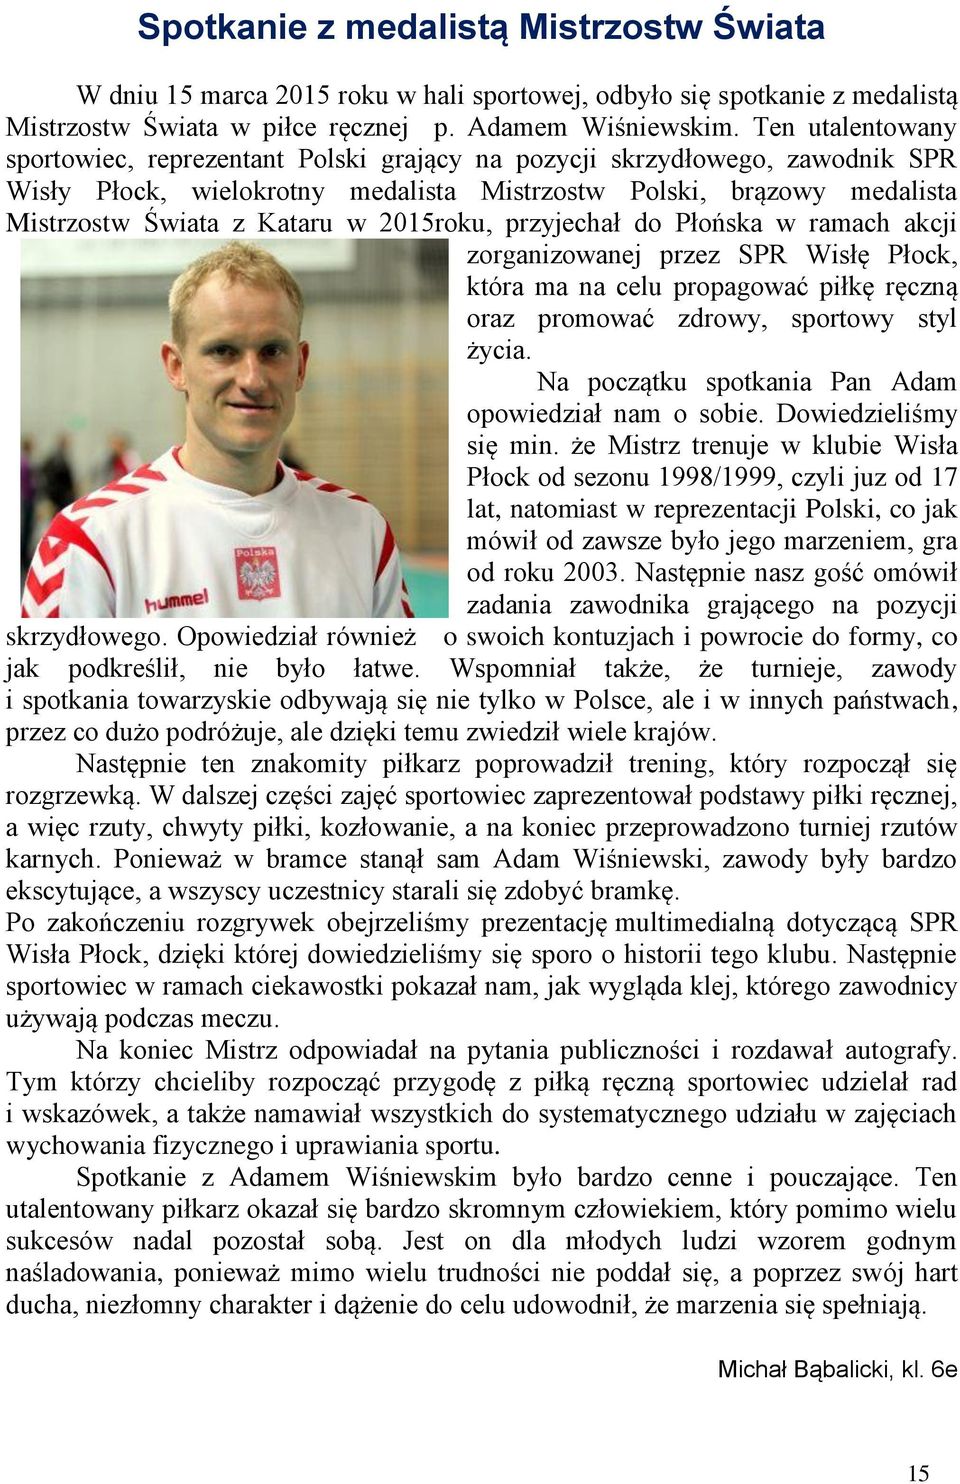 pryjechał do Płońska w ramach akcji organiowanej pre SPR Wisłę Płock, która ma na celu propagować piłkę ręcną ora promować drowy, sportowy styl życia.